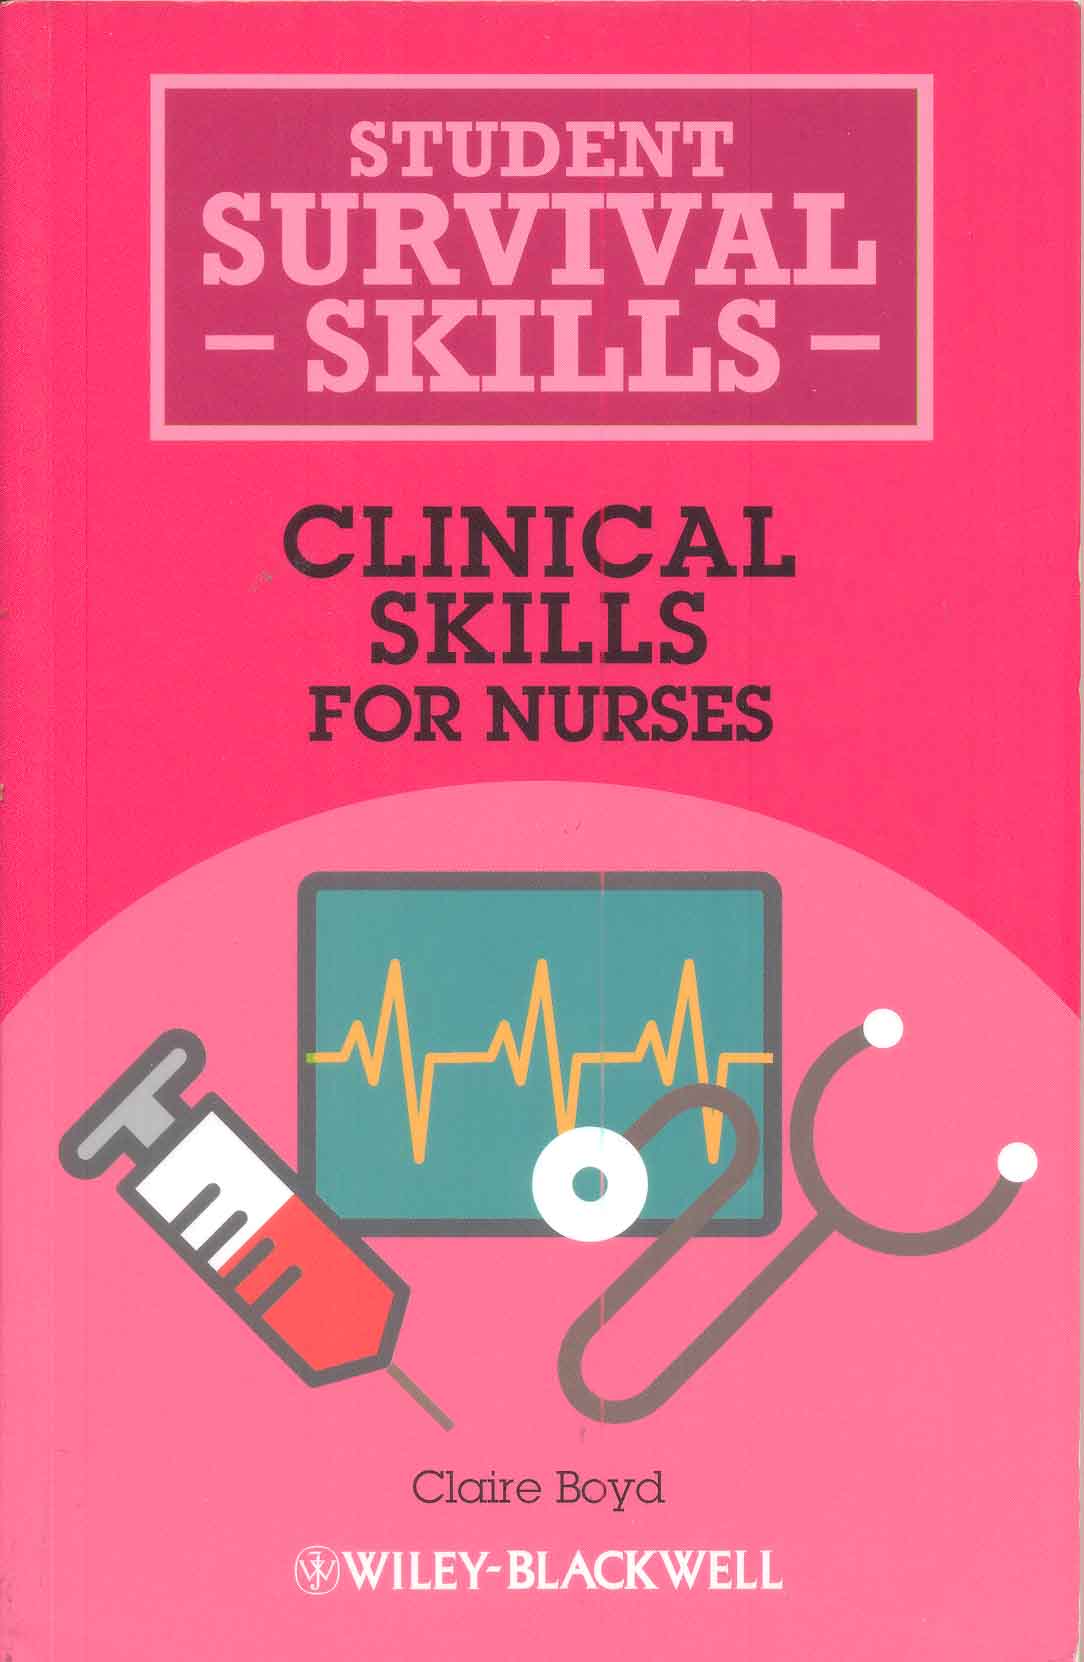 Clinical skills for nurses